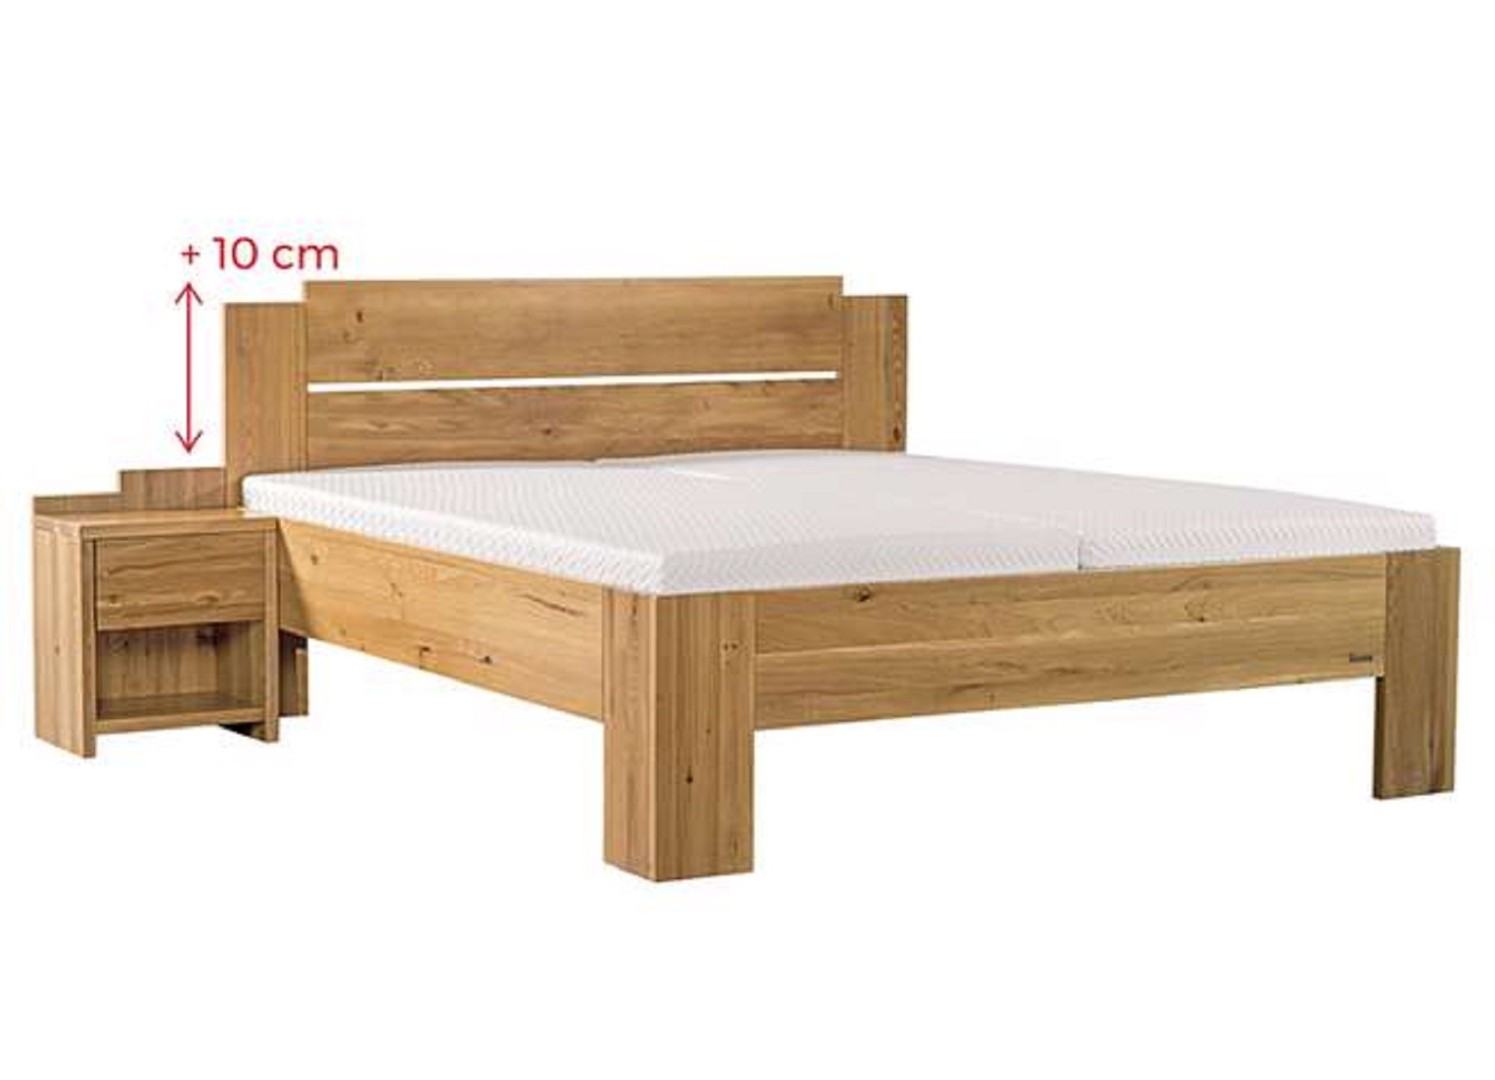 Ahorn GRADO MAX - masivní dubová postel se zvýšeným čelem ATYP, dub masiv